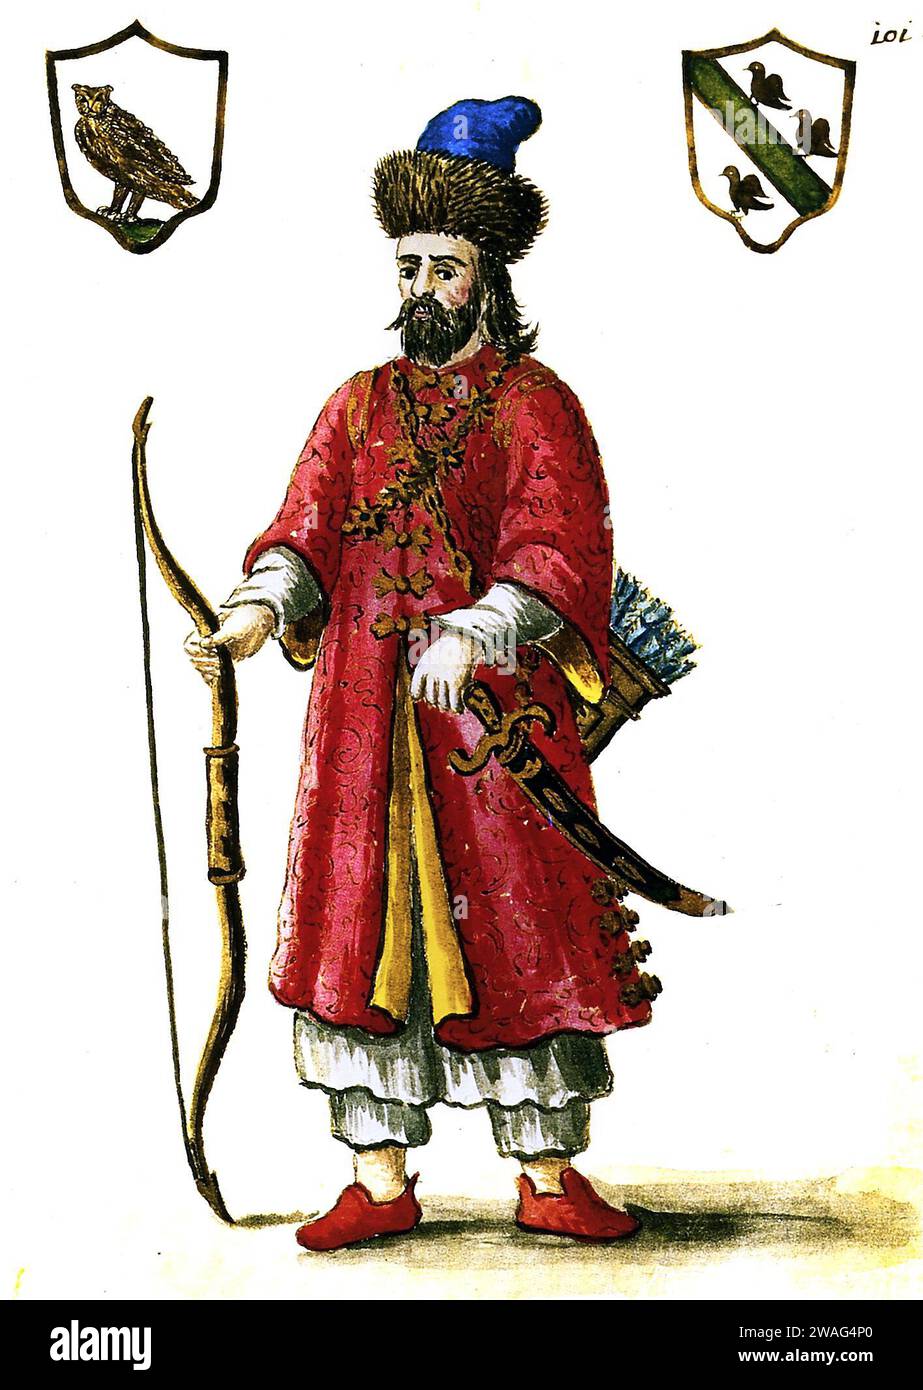 Marco Polo. Ritratto del mercante ed esploratore veneziano, Marco Polo (c. 1254-1324), illustrazione settecentesca in uniforme tartara Foto Stock